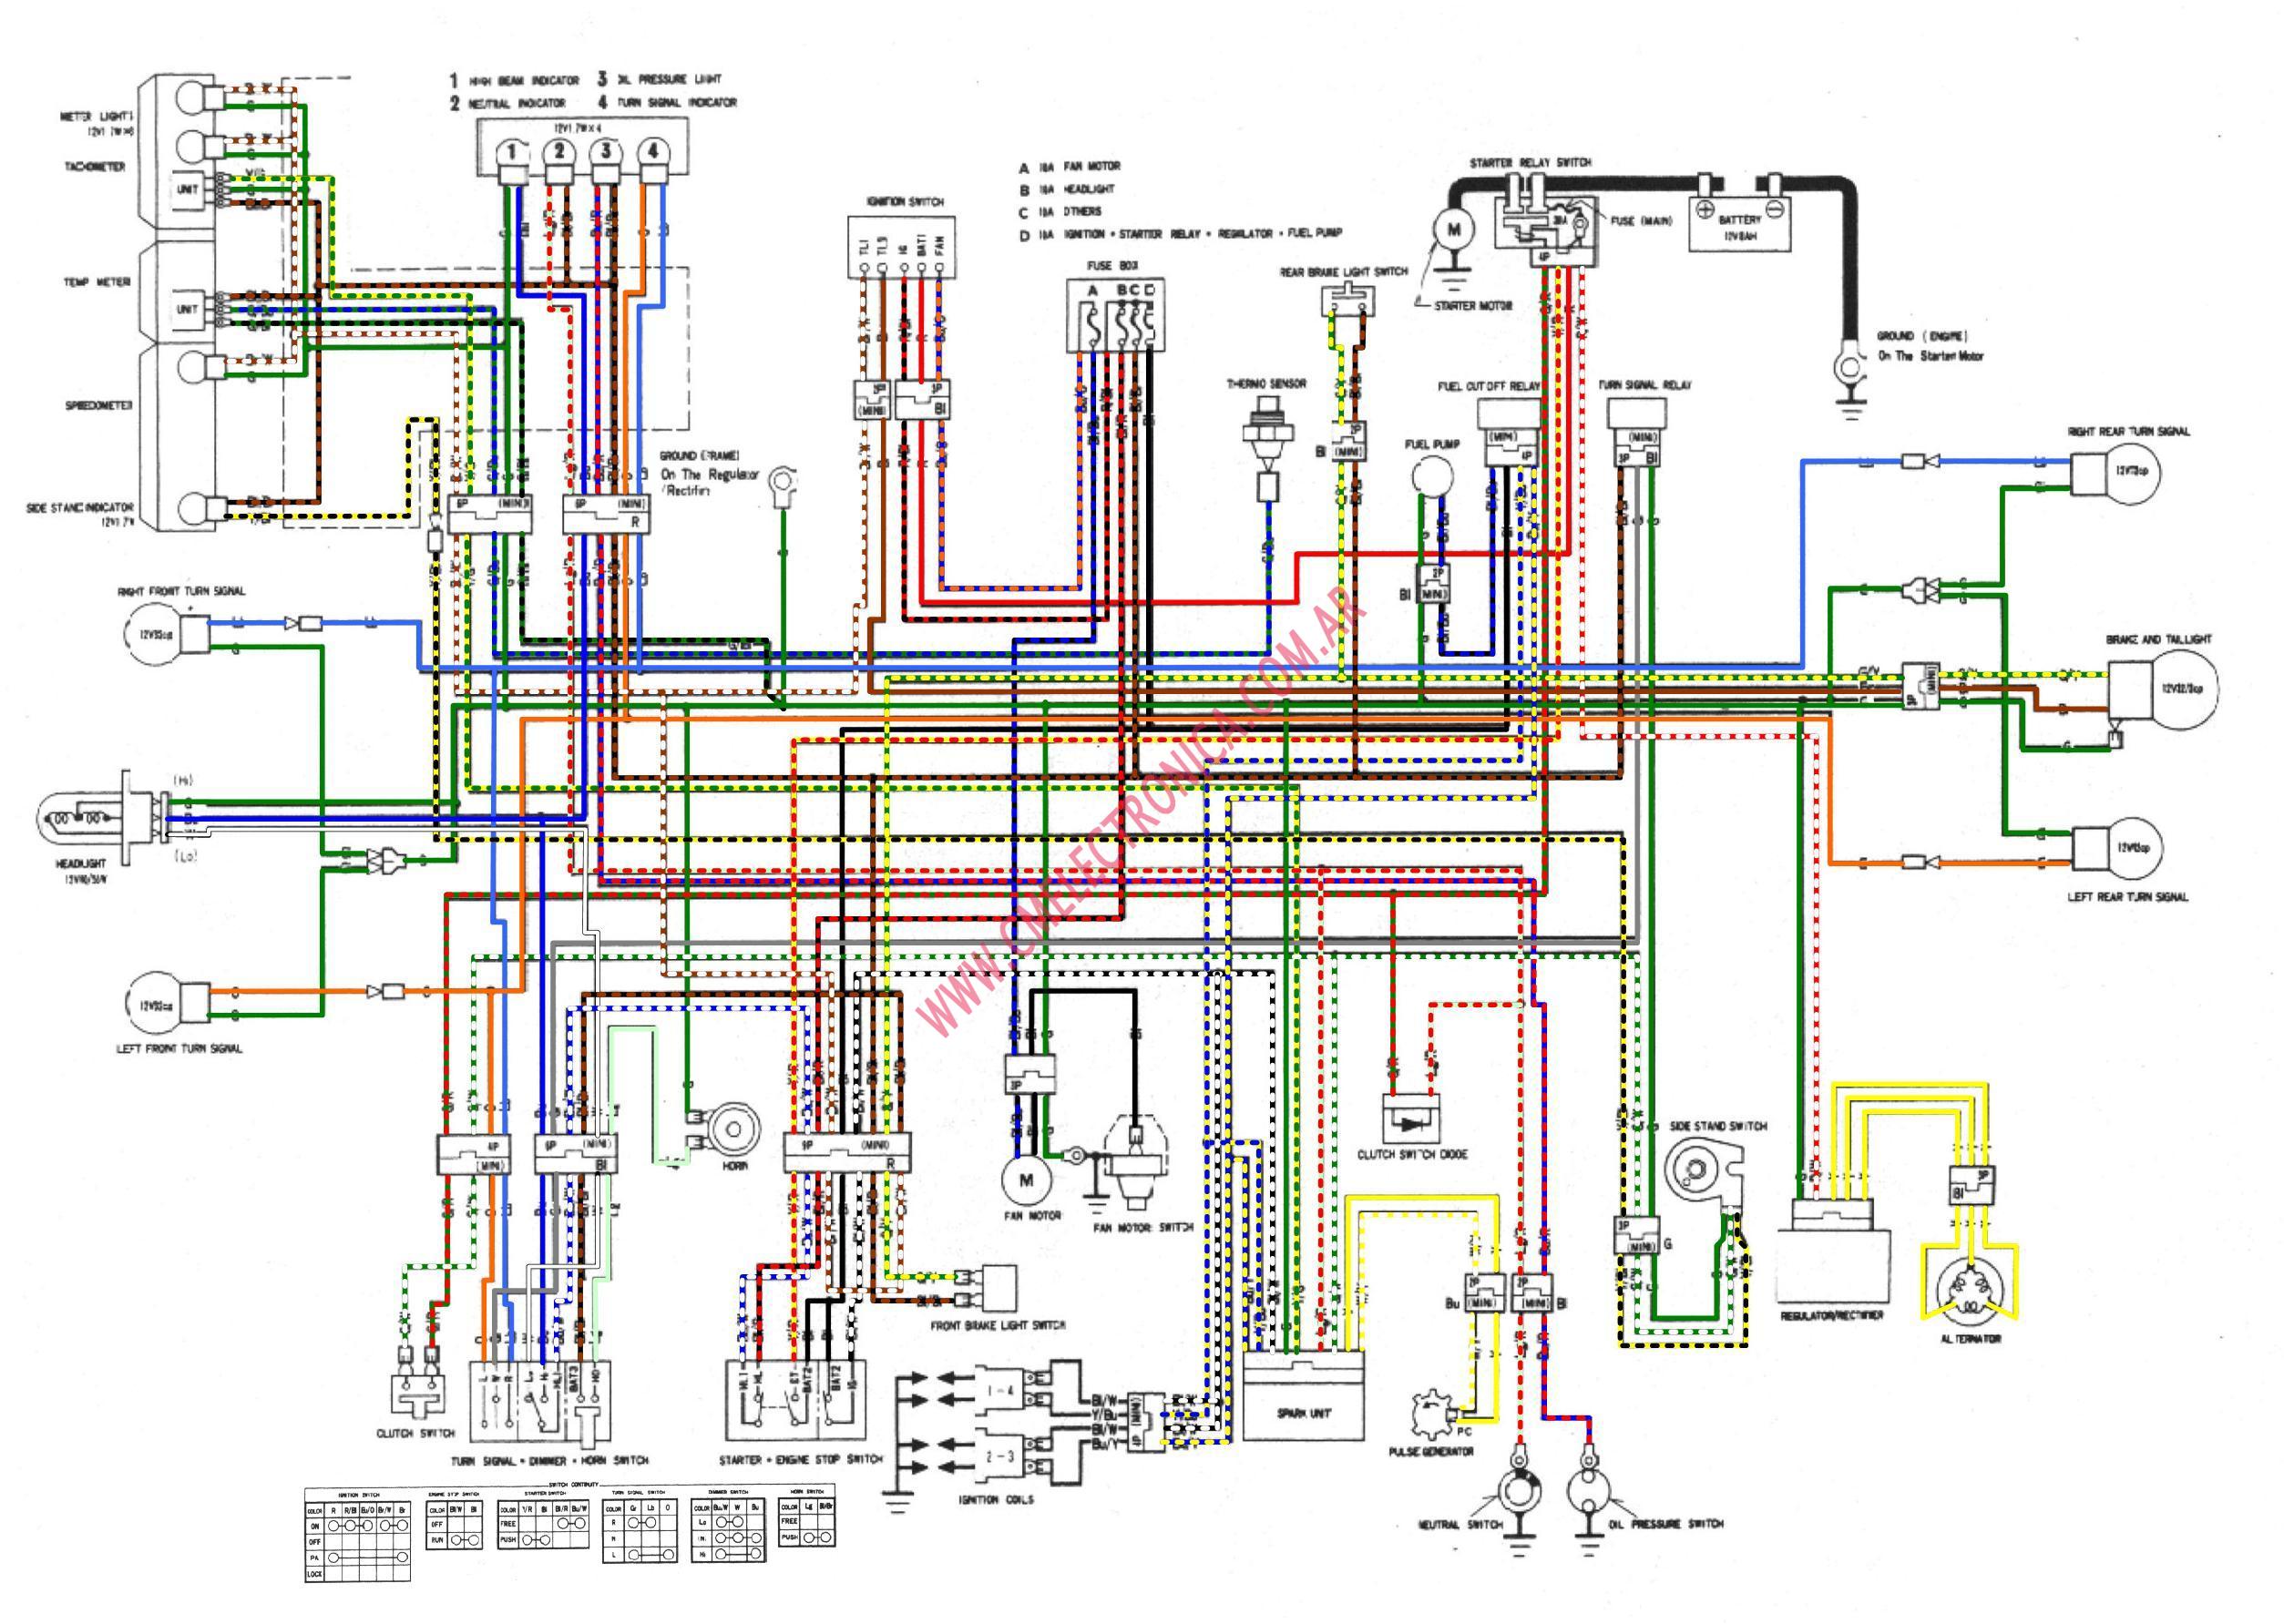 Xs400 Wiring Diagram - Wiring Diagram Schemas